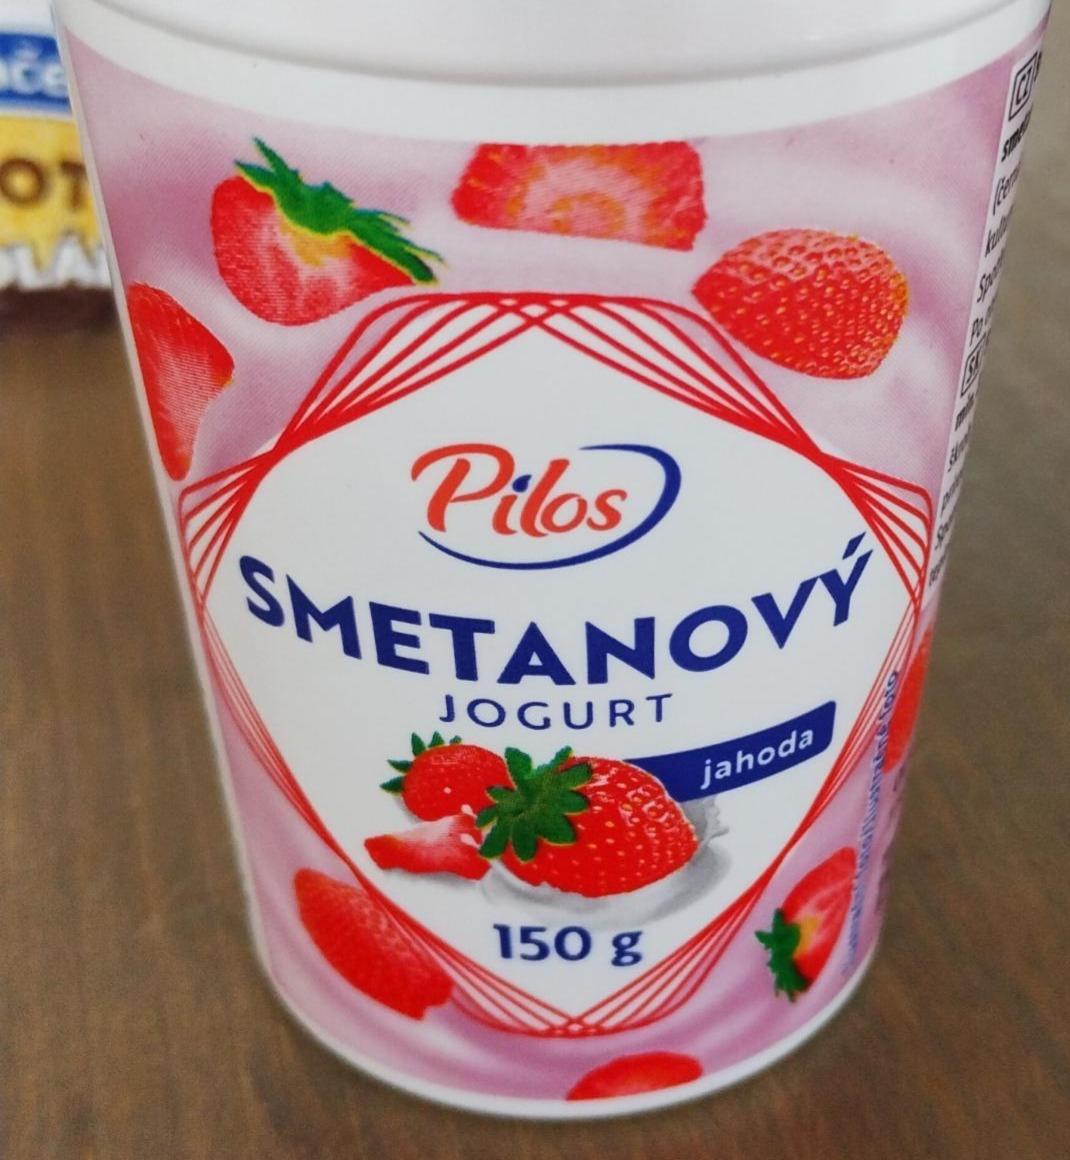 Fotografie - Smetanový jogurt jahoda Pilos